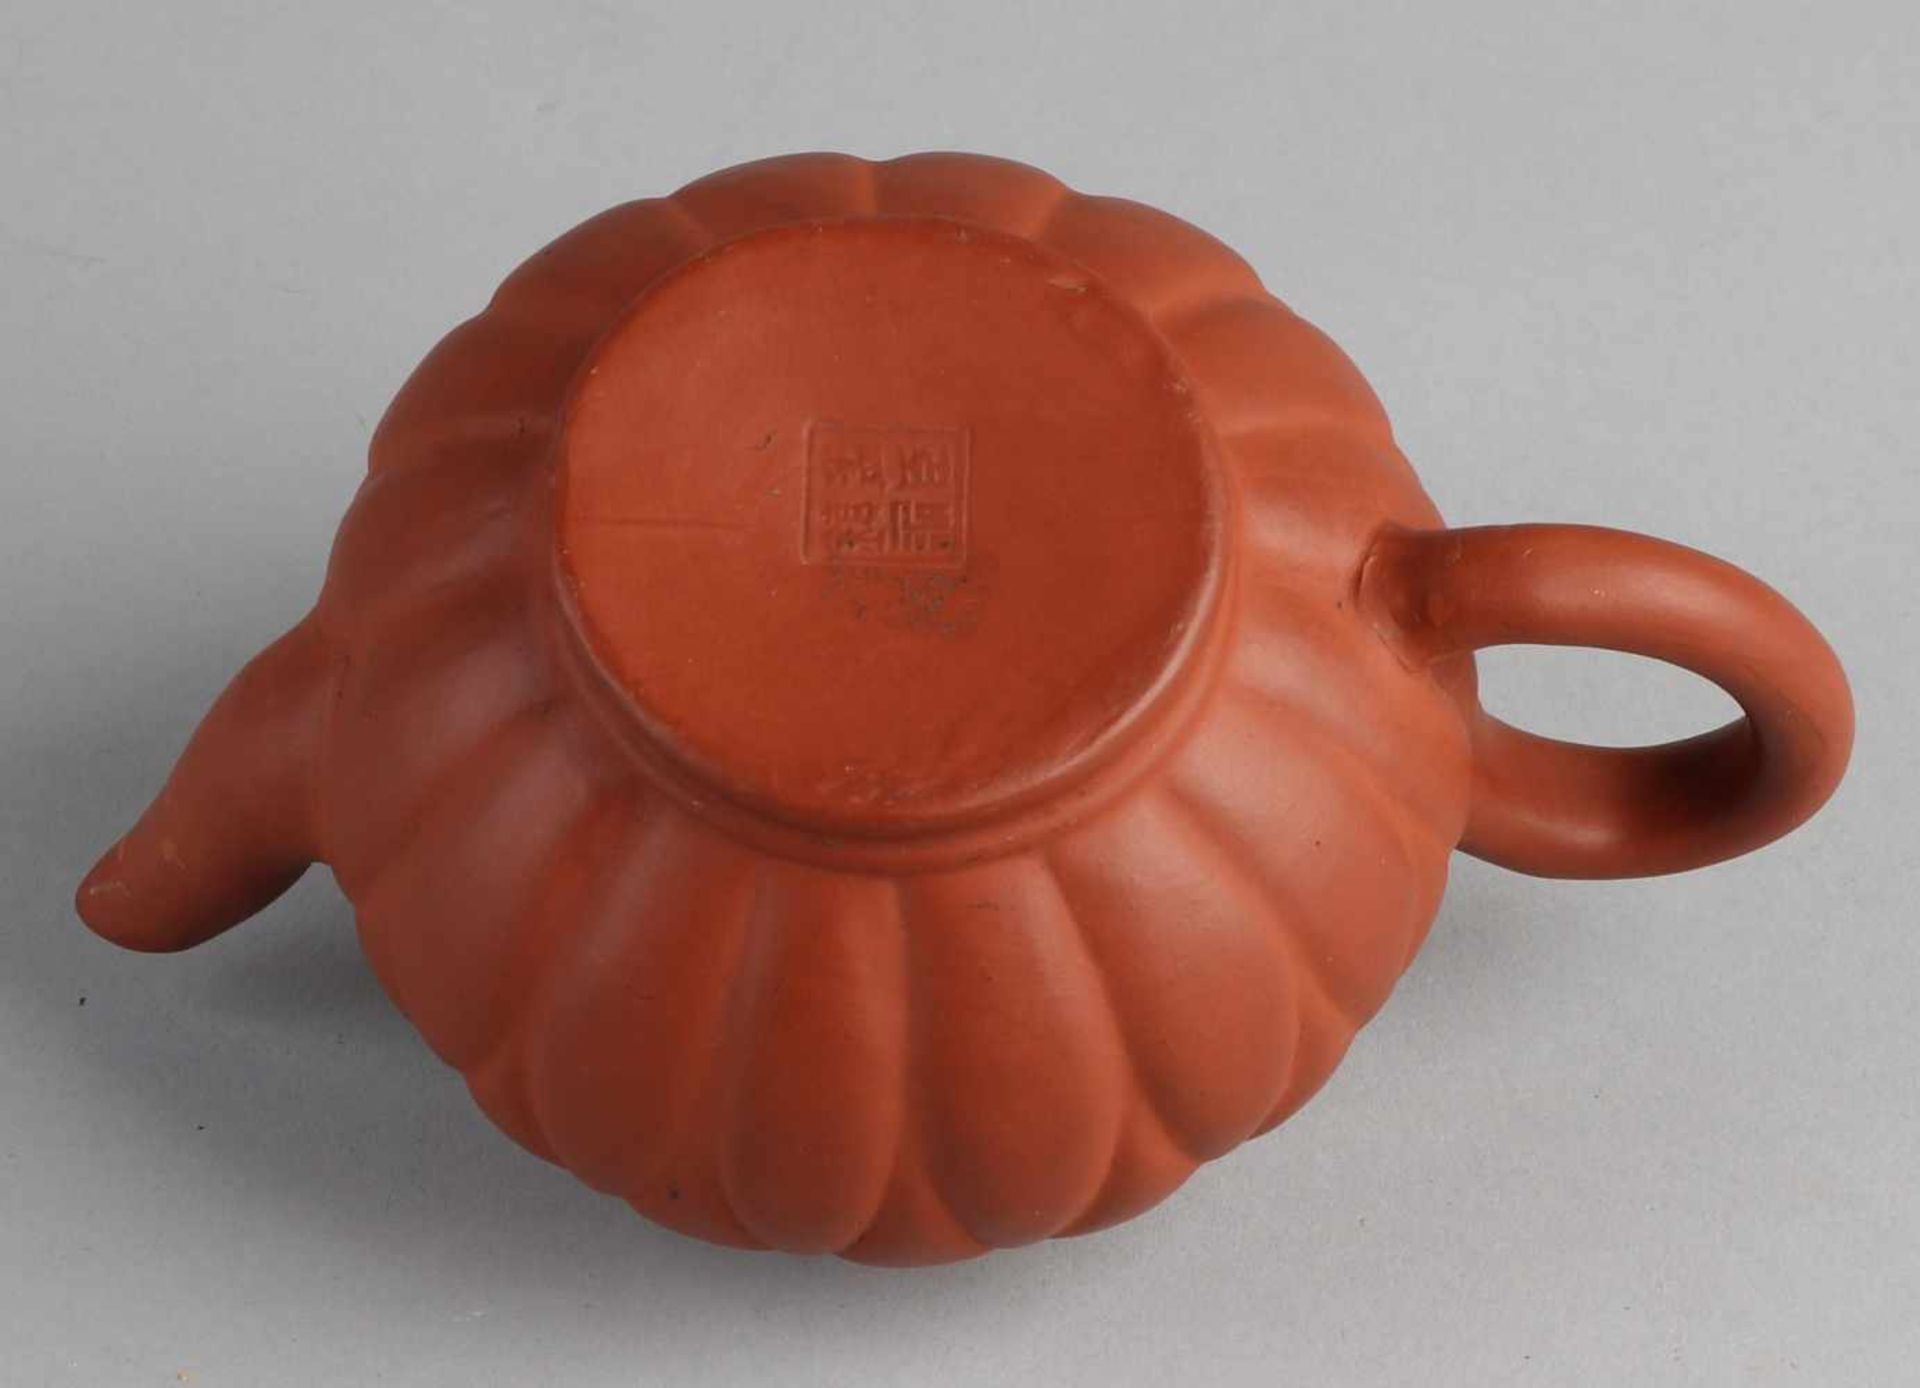 Chinesische Yixing Teekanne mit Bodenmarke. Größe: 8,5 x 14 x Ø 8,5 cm. In guter Kondition. - Image 2 of 2